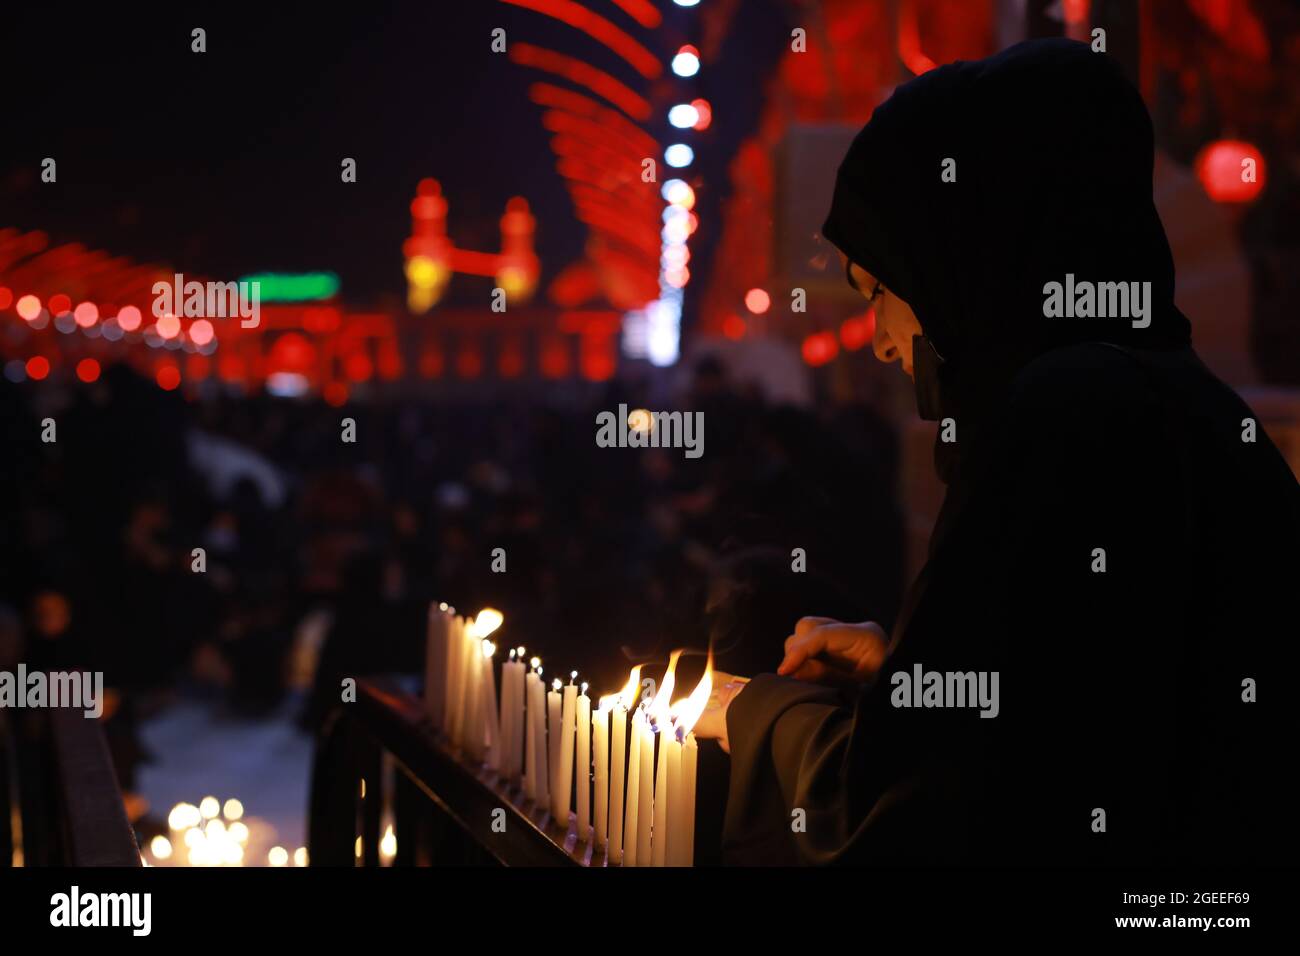 Karbala, Irak. 19 août 2021. Une femme musulmane chiite allume des bougies au sanctuaire de l'Imam Abbas dans la ville sainte irakienne de Karbala le jour de l'Ashura, le 10 de Muharram, le premier mois du calendrier islamique. Muharram est considéré comme un mois de deuil et de mémoire pour les musulmans chiites dans le monde entier, dans lequel ils commémorent le martyre du petit-fils du prophète islamique Mohammad, Husayn ibn Ali, qui a été tué lors de la bataille de Karbala au VIIe siècle. Credit: Ameer Al Mohmedaw/dpa/Alamy Live News Banque D'Images